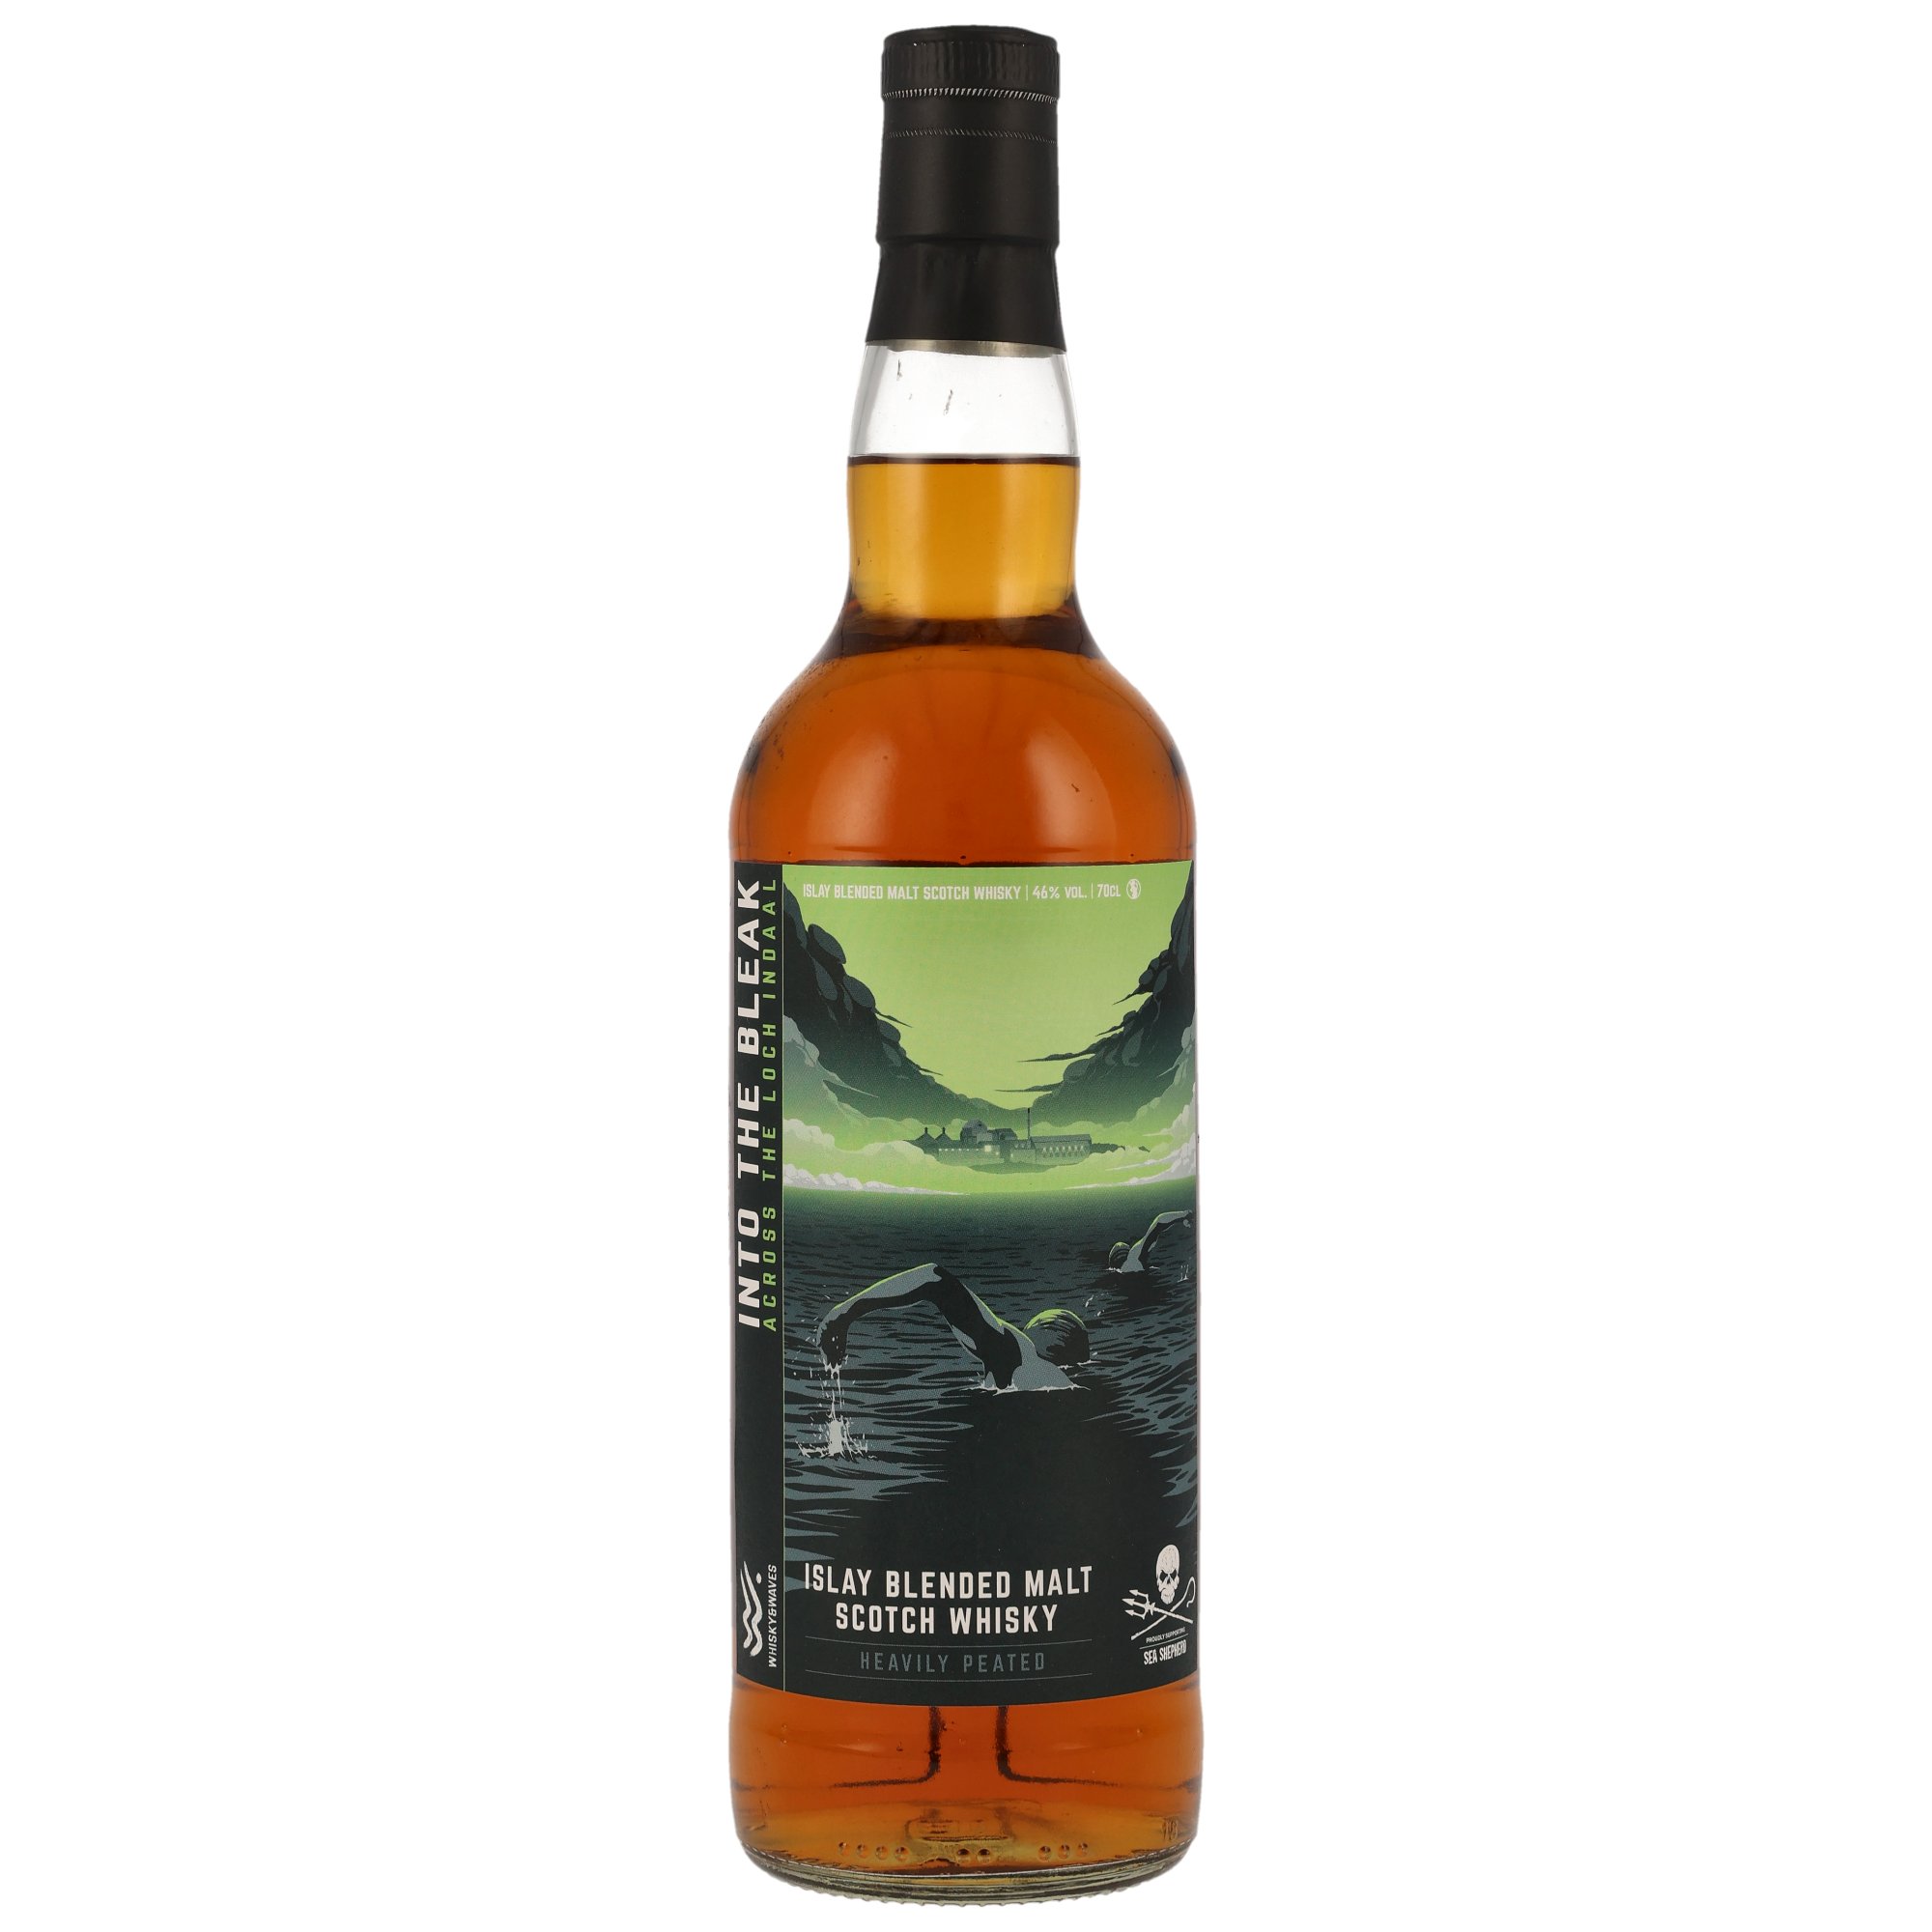 Islay Blended Malt Whisky (Into the Bleak) - Sea Shepherd (Blended Malt von Bowmore & Co), 46% Alc.Vol.